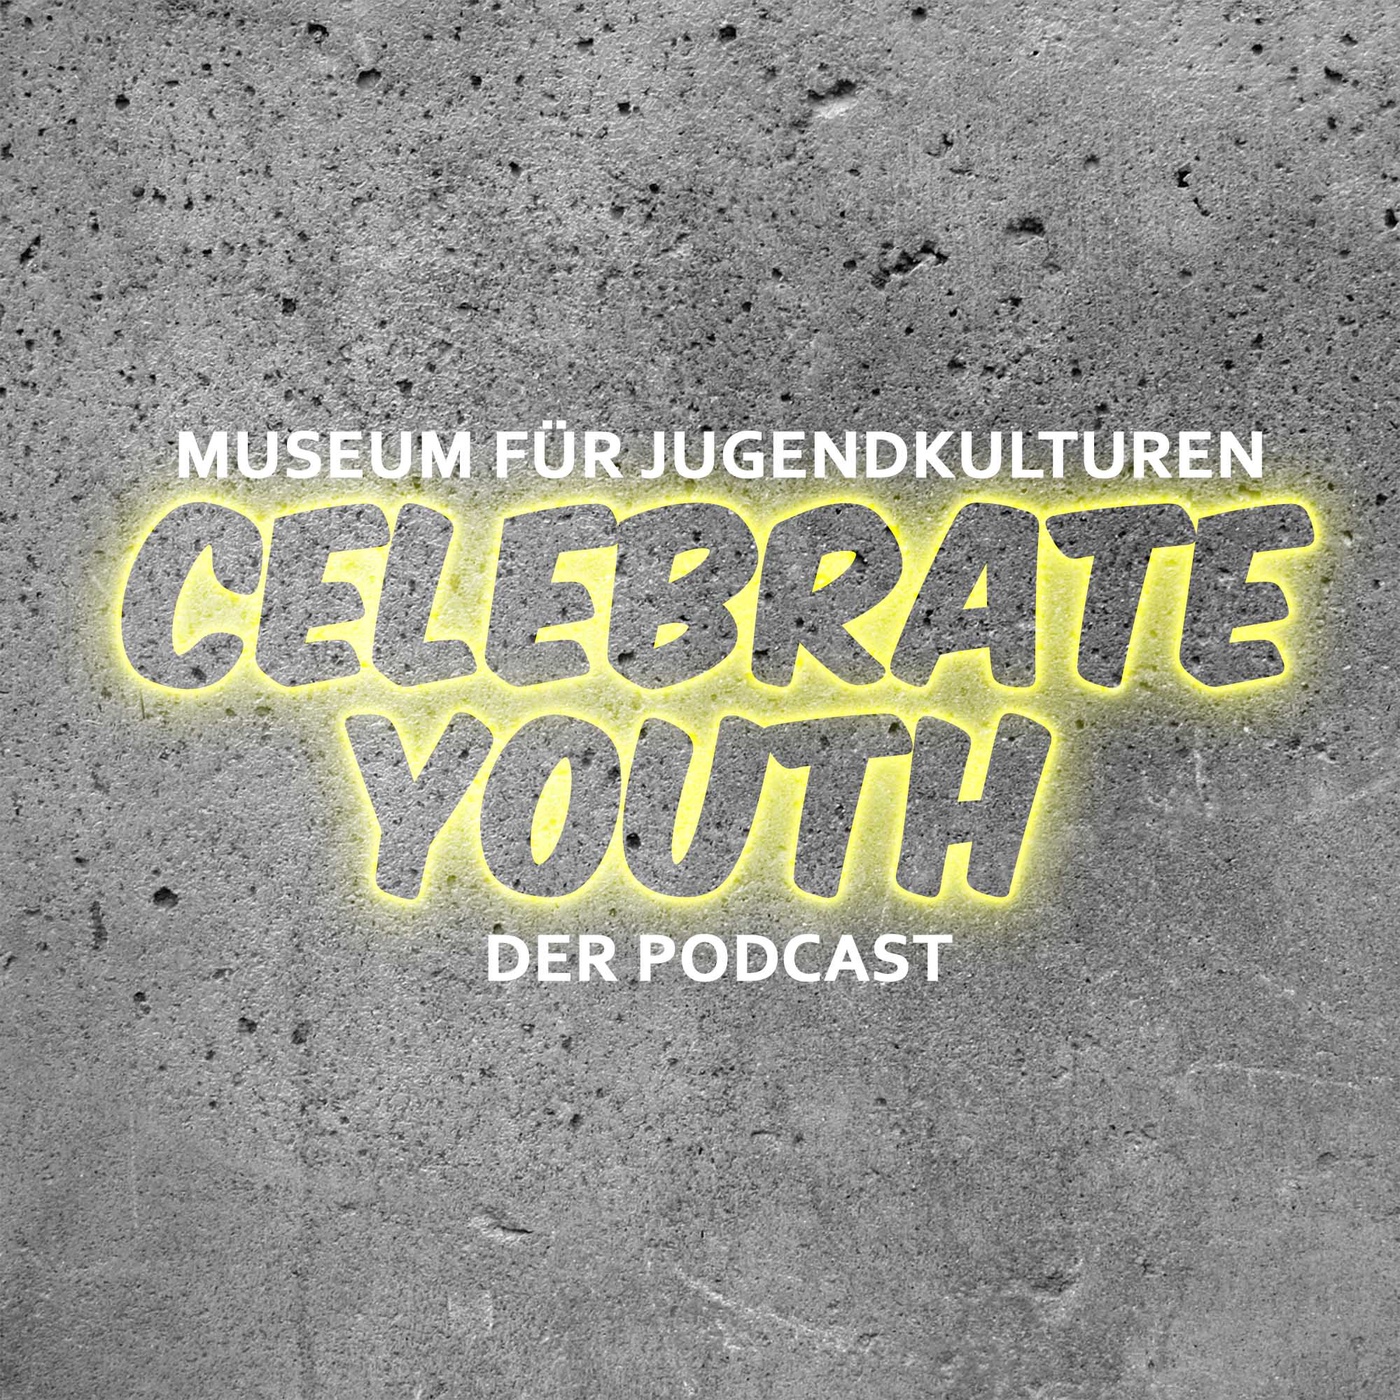 Celebrate Youth. Der Podcast des Museums für Jugendkulturen